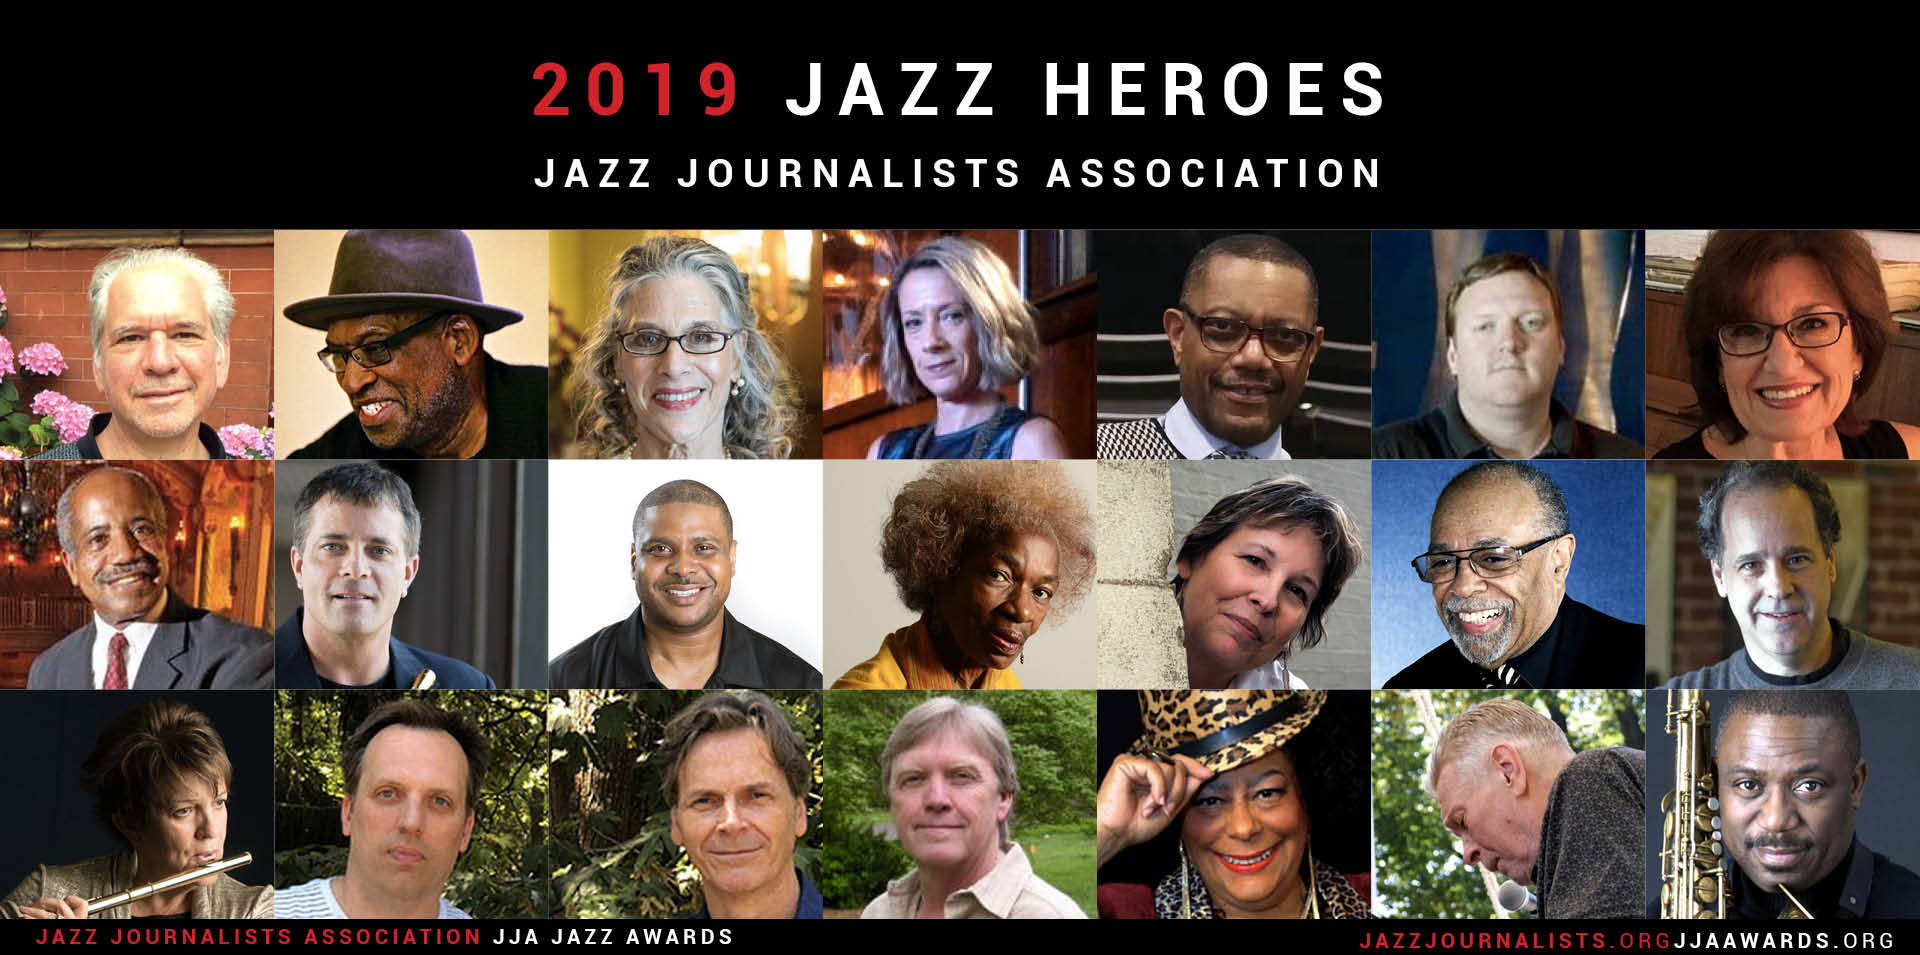 2019 Jazz Heroes composite